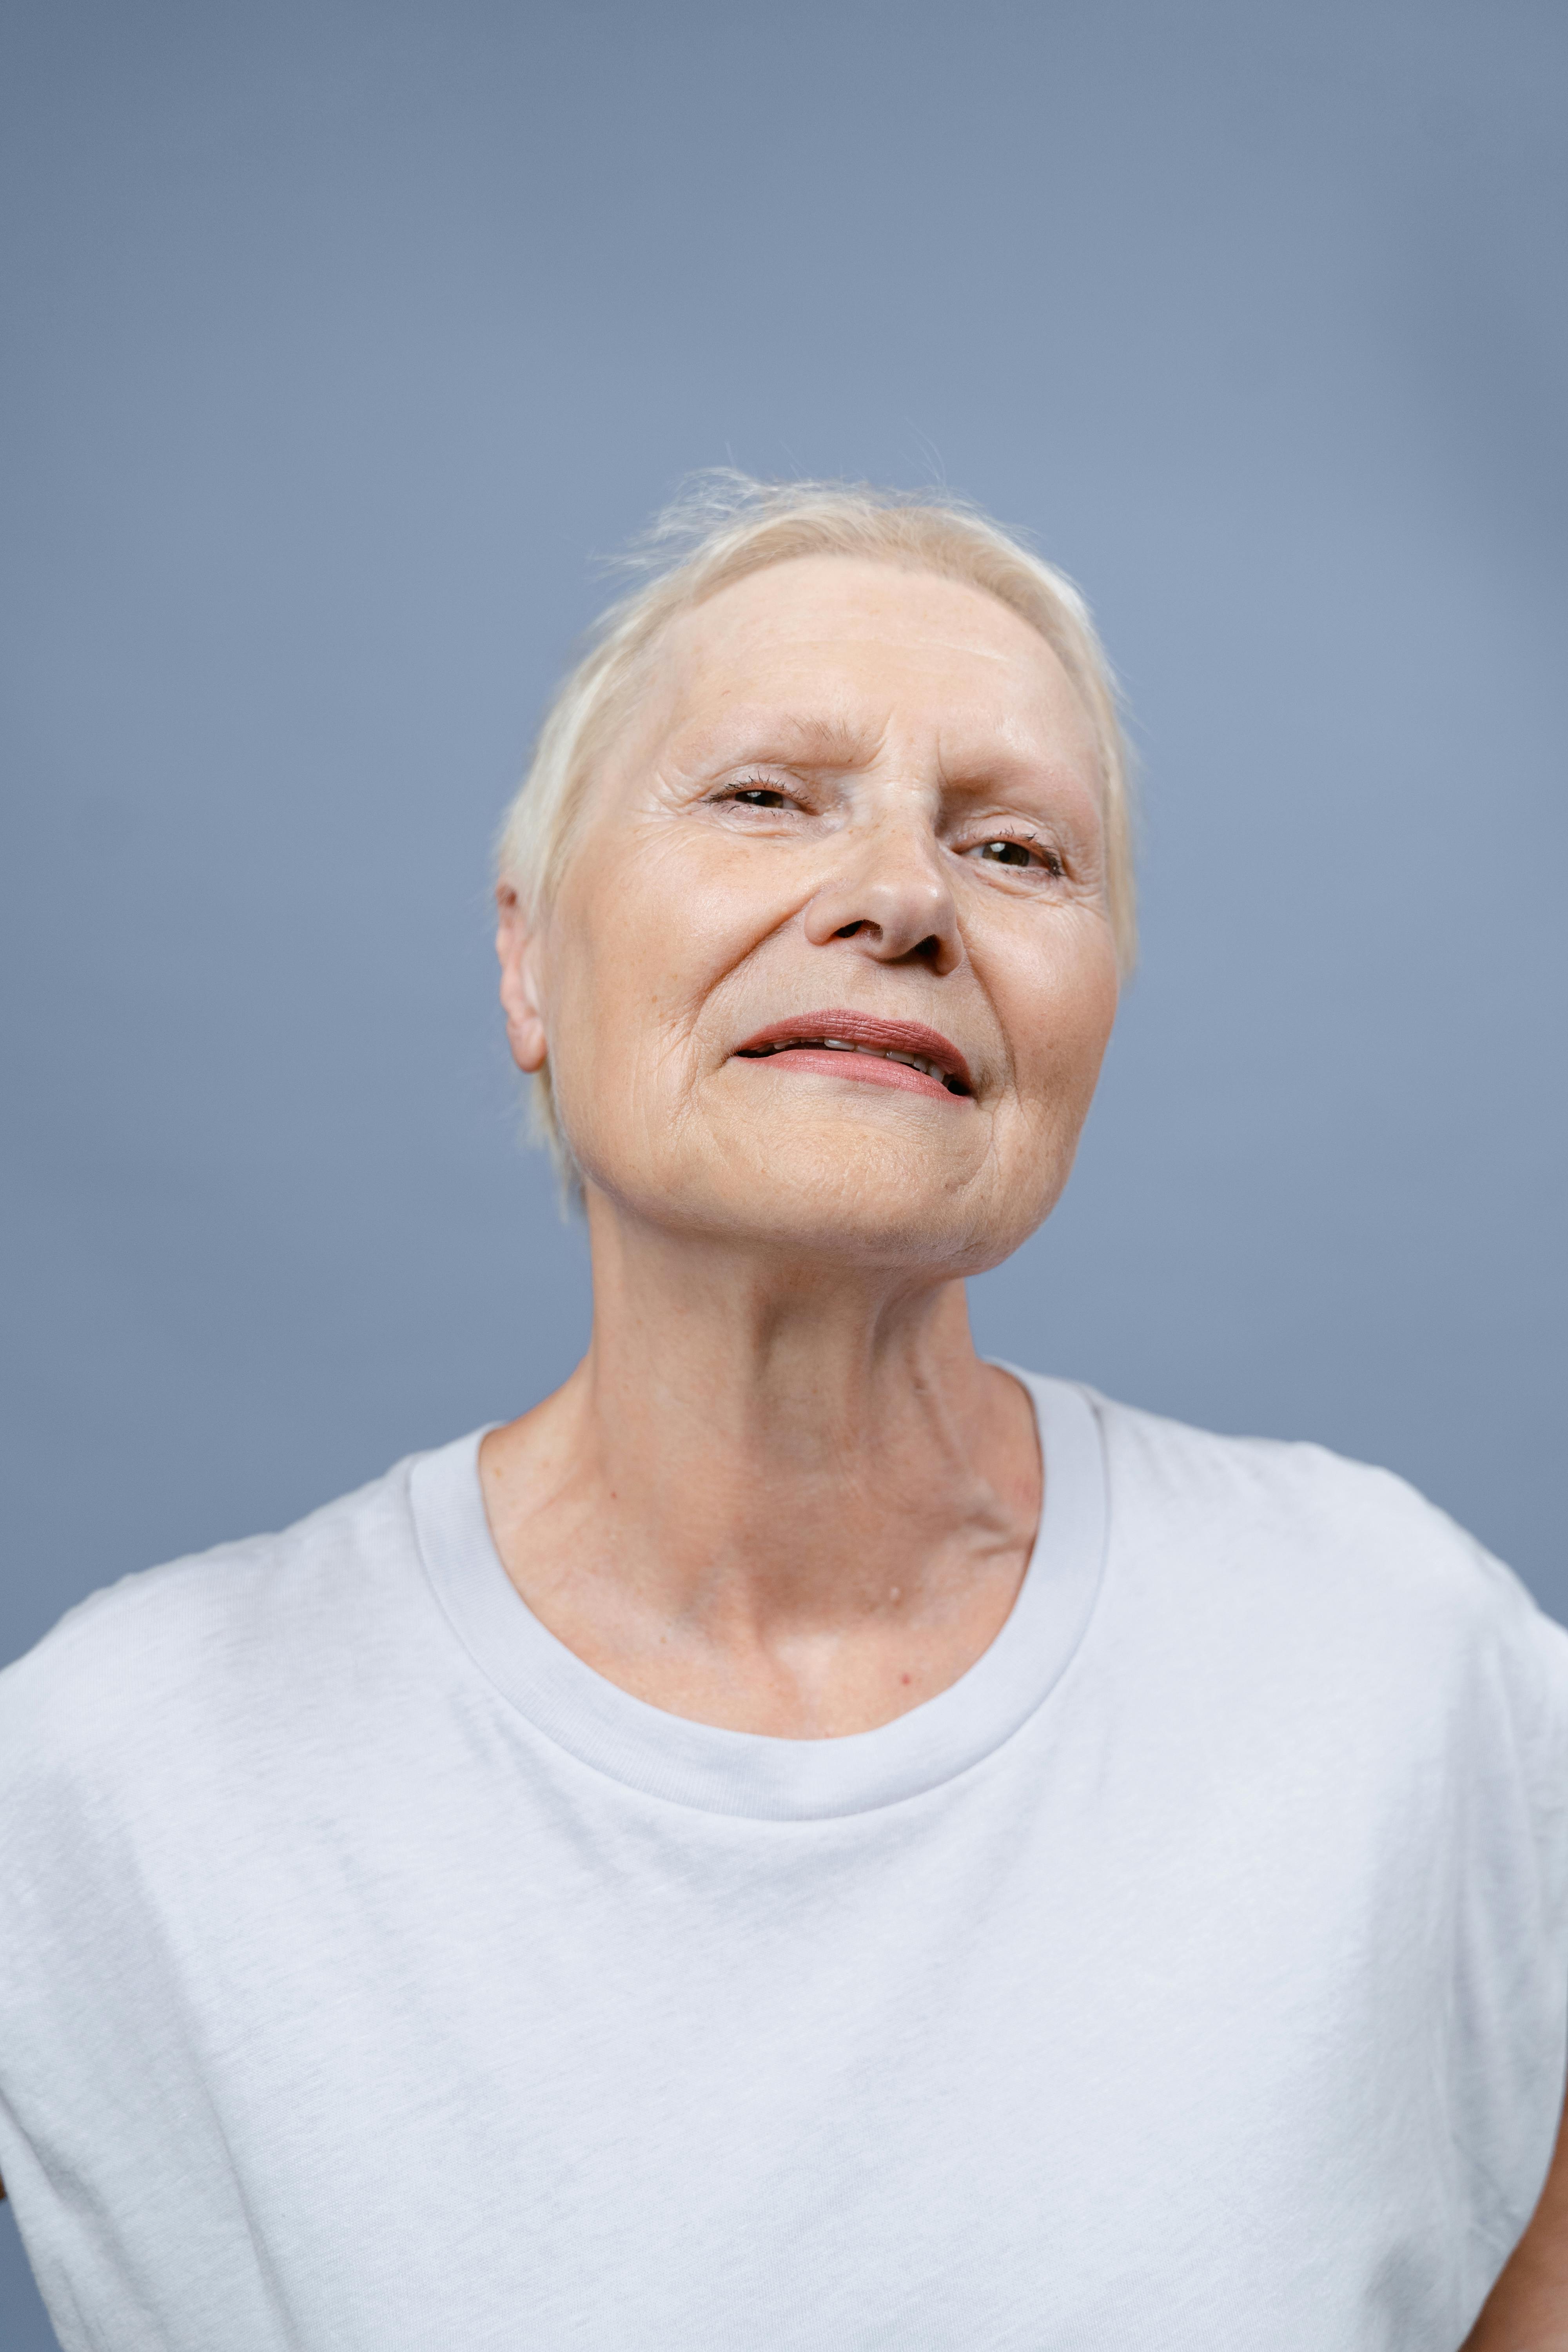 An arrogant-looking older woman | Source: Pexels